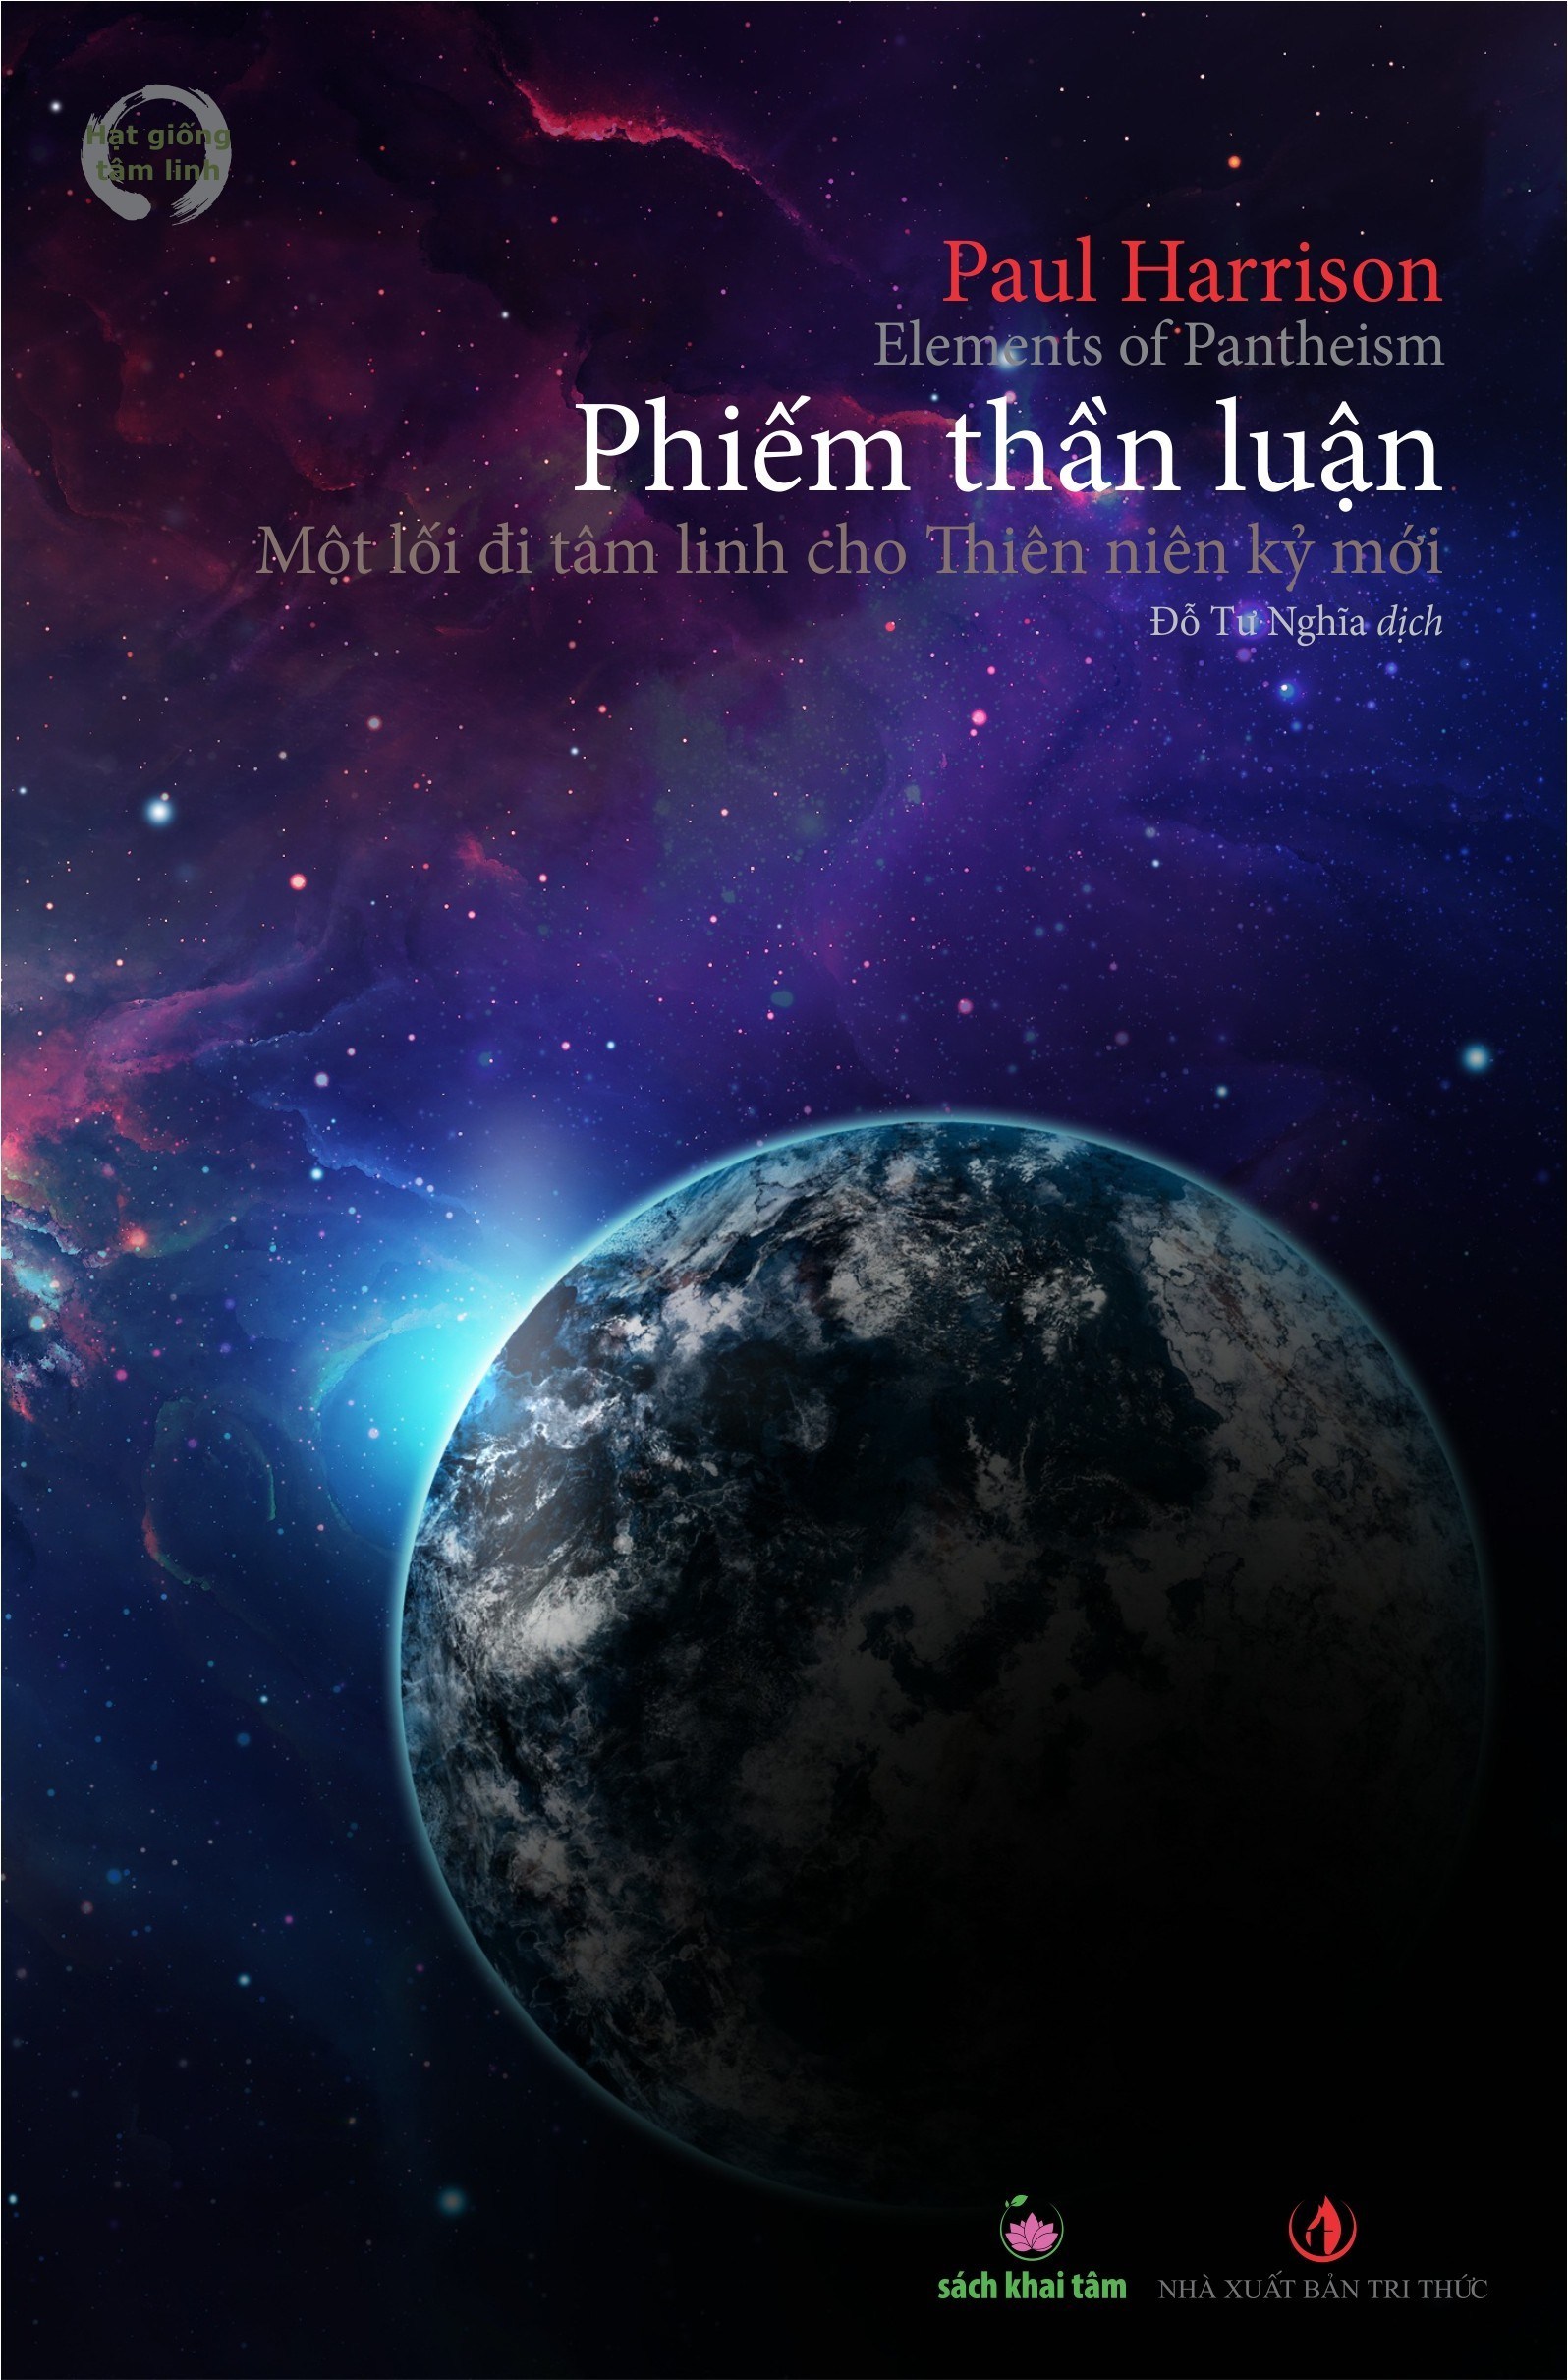 Phiếm thần luận được xuất bản bởi NXB Tri thức và nhà sách Khai Tâm.